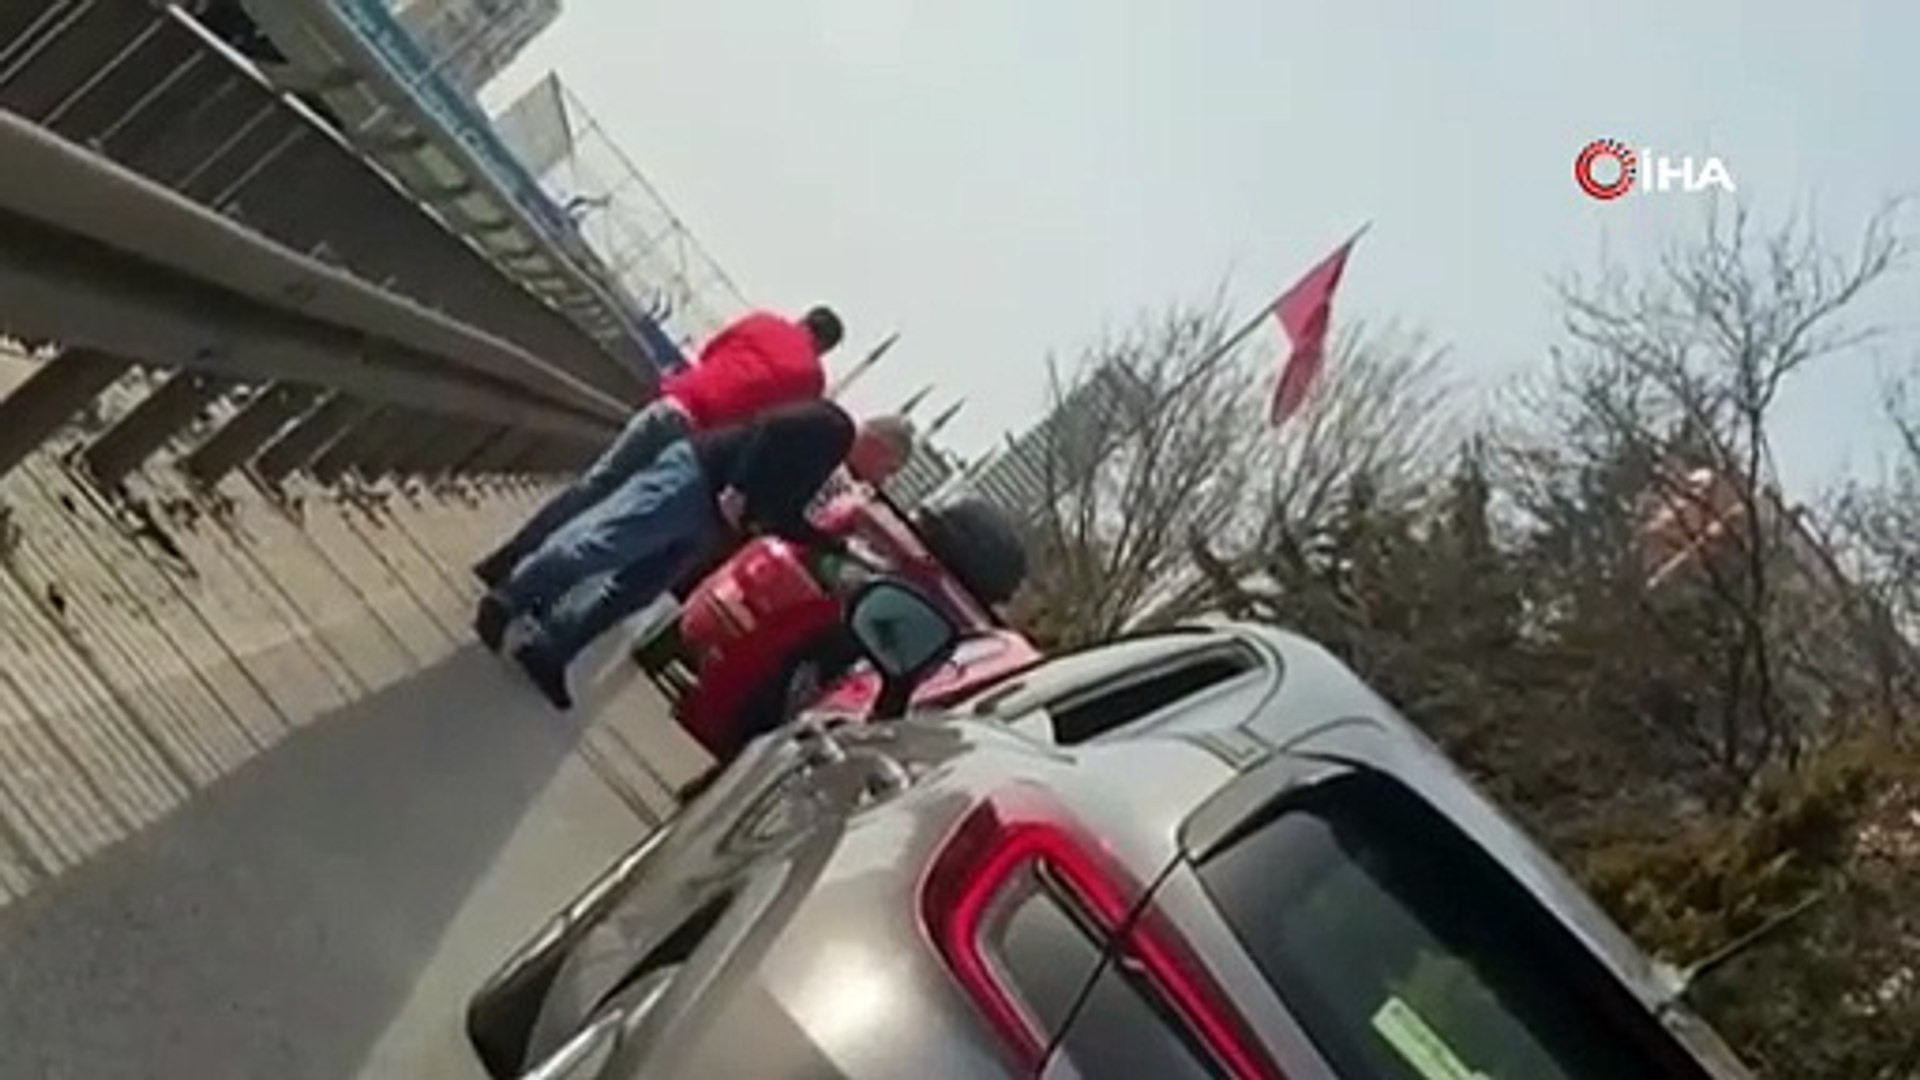 İstanbul trafiğinde bıçaklı, çekiçli kavga kamerada